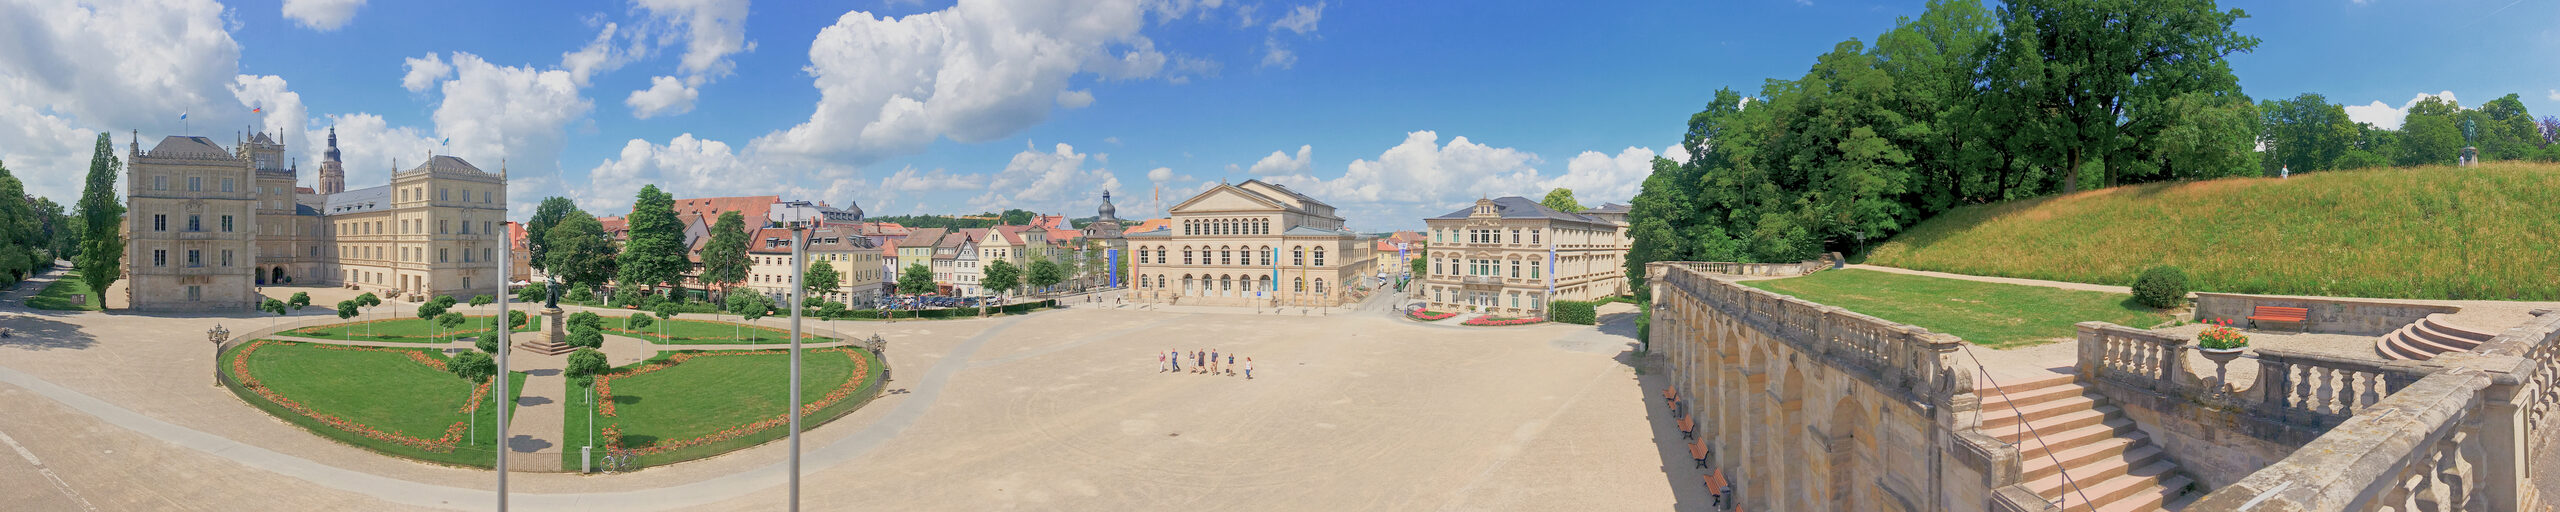 Schlossplatz im Sommer